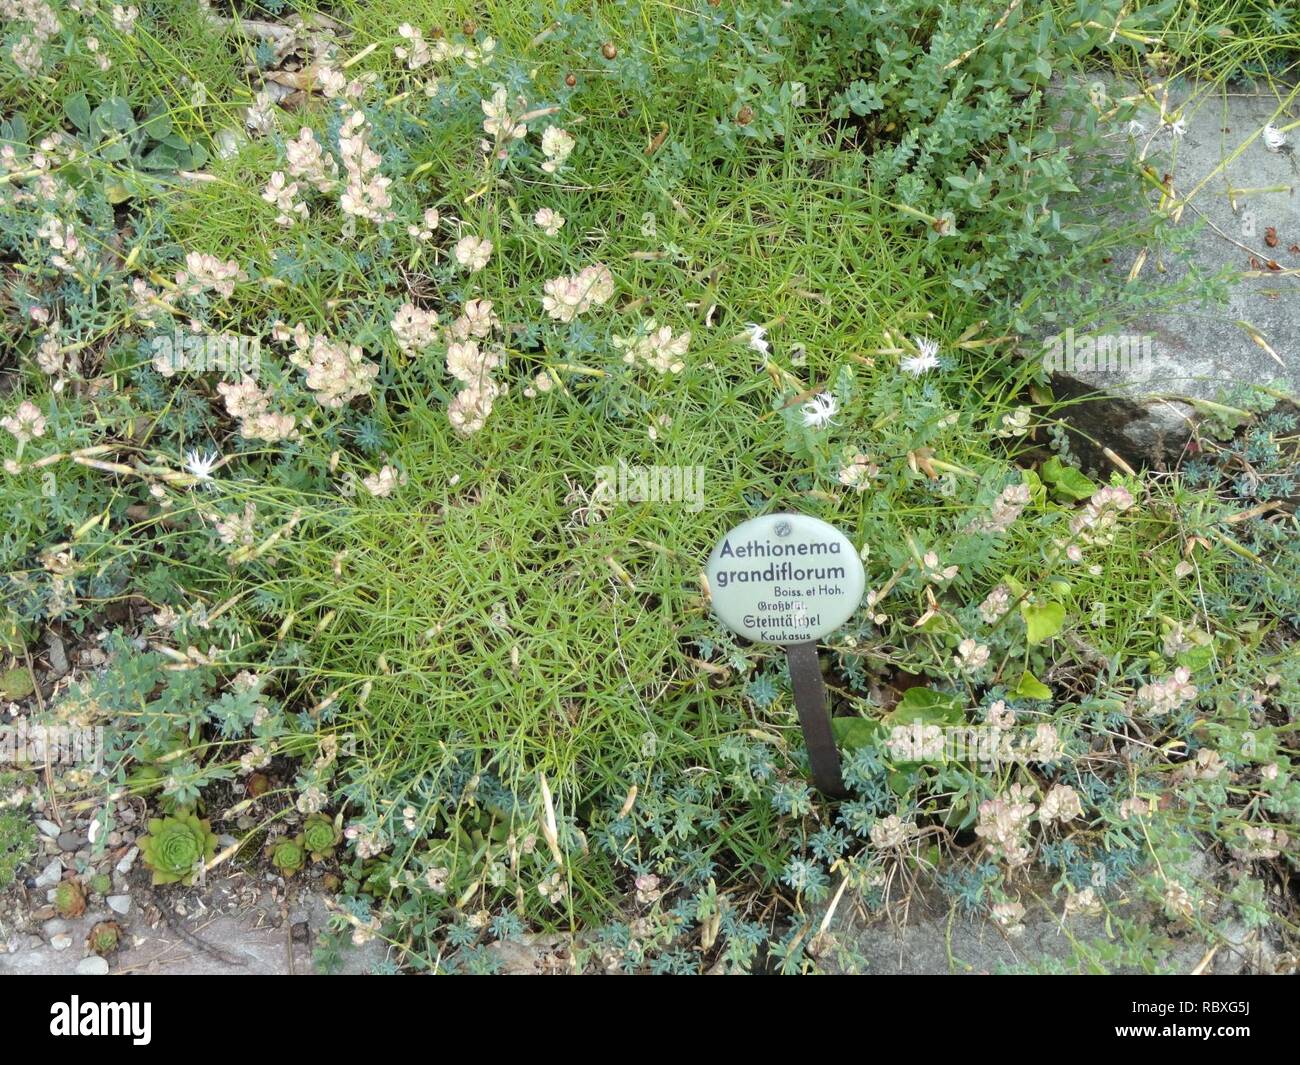 Aethionema grandiflorum - Botanischer Garten, Frankfurt am Main - DSC02642. Stock Photo